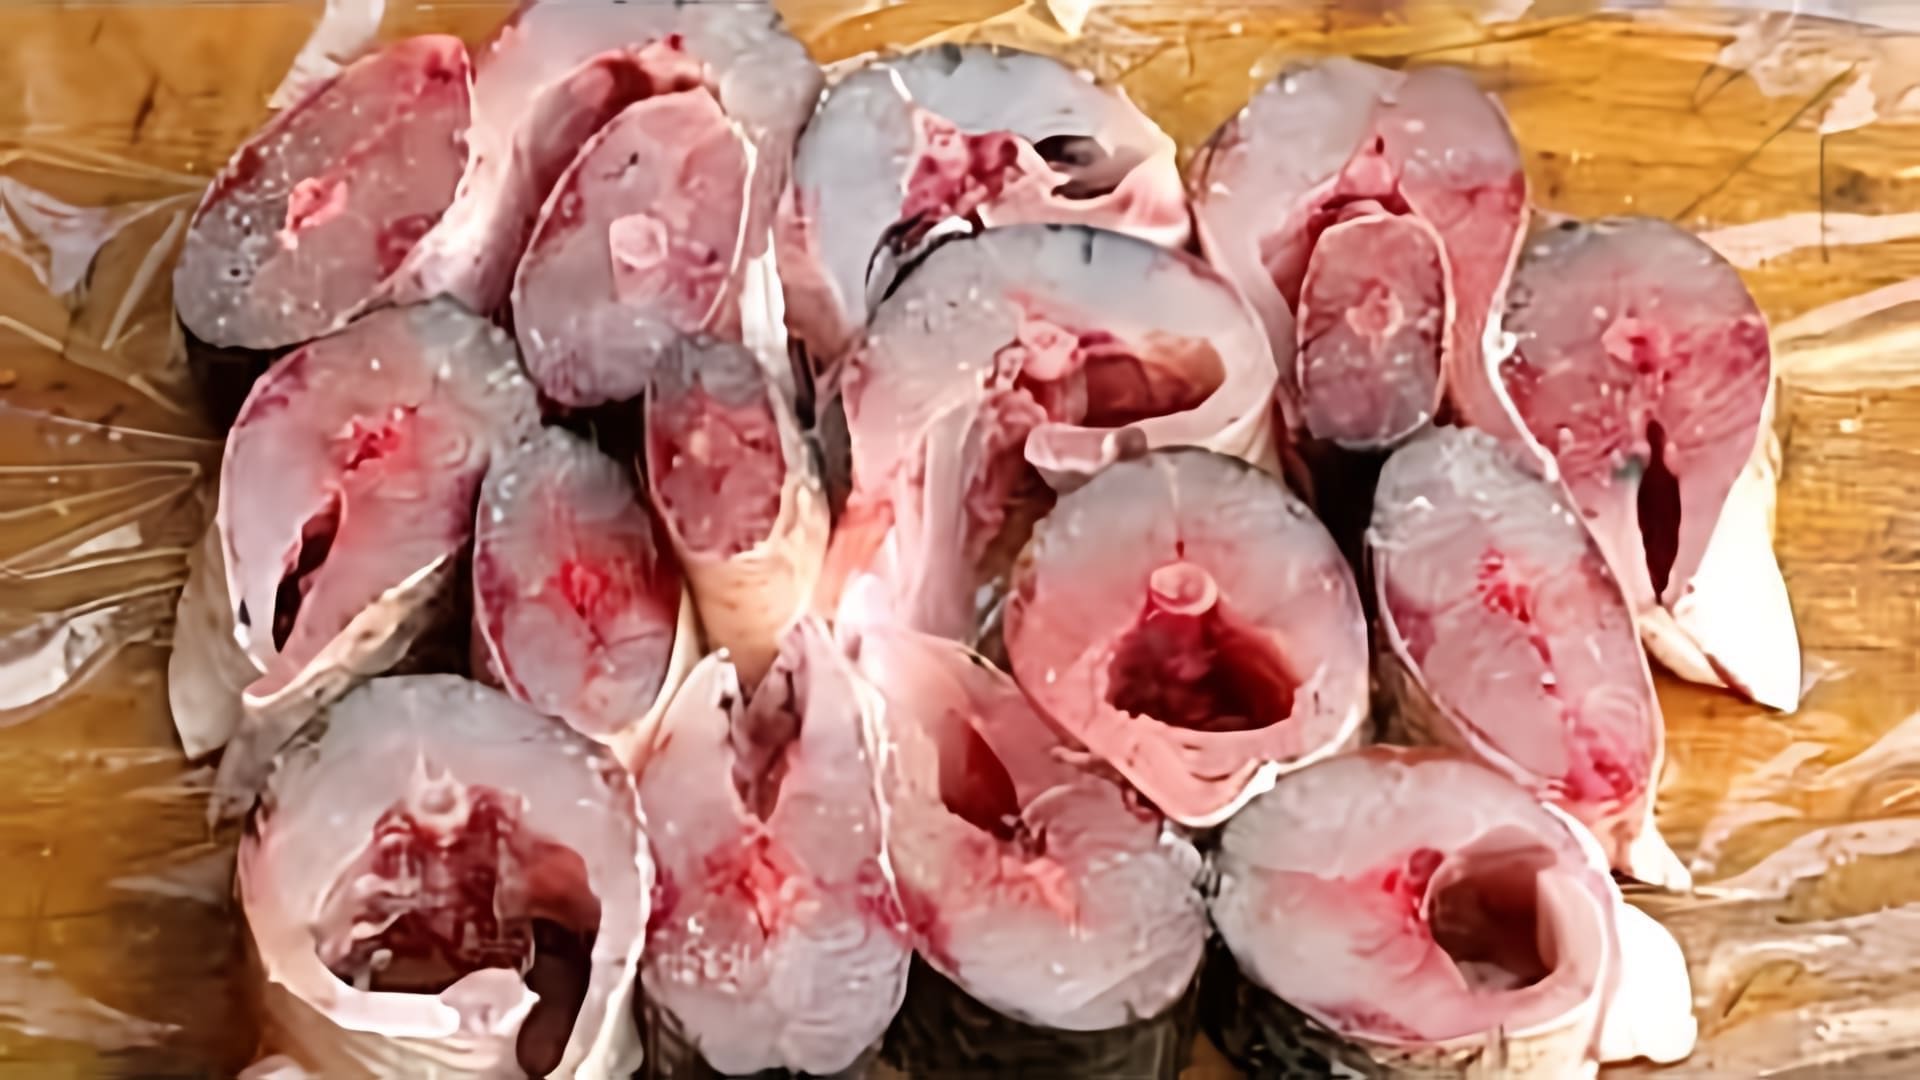 В данном видео демонстрируется процесс приготовления жареной рыбы с луком, а именно черноморской кефали или пеленгаса